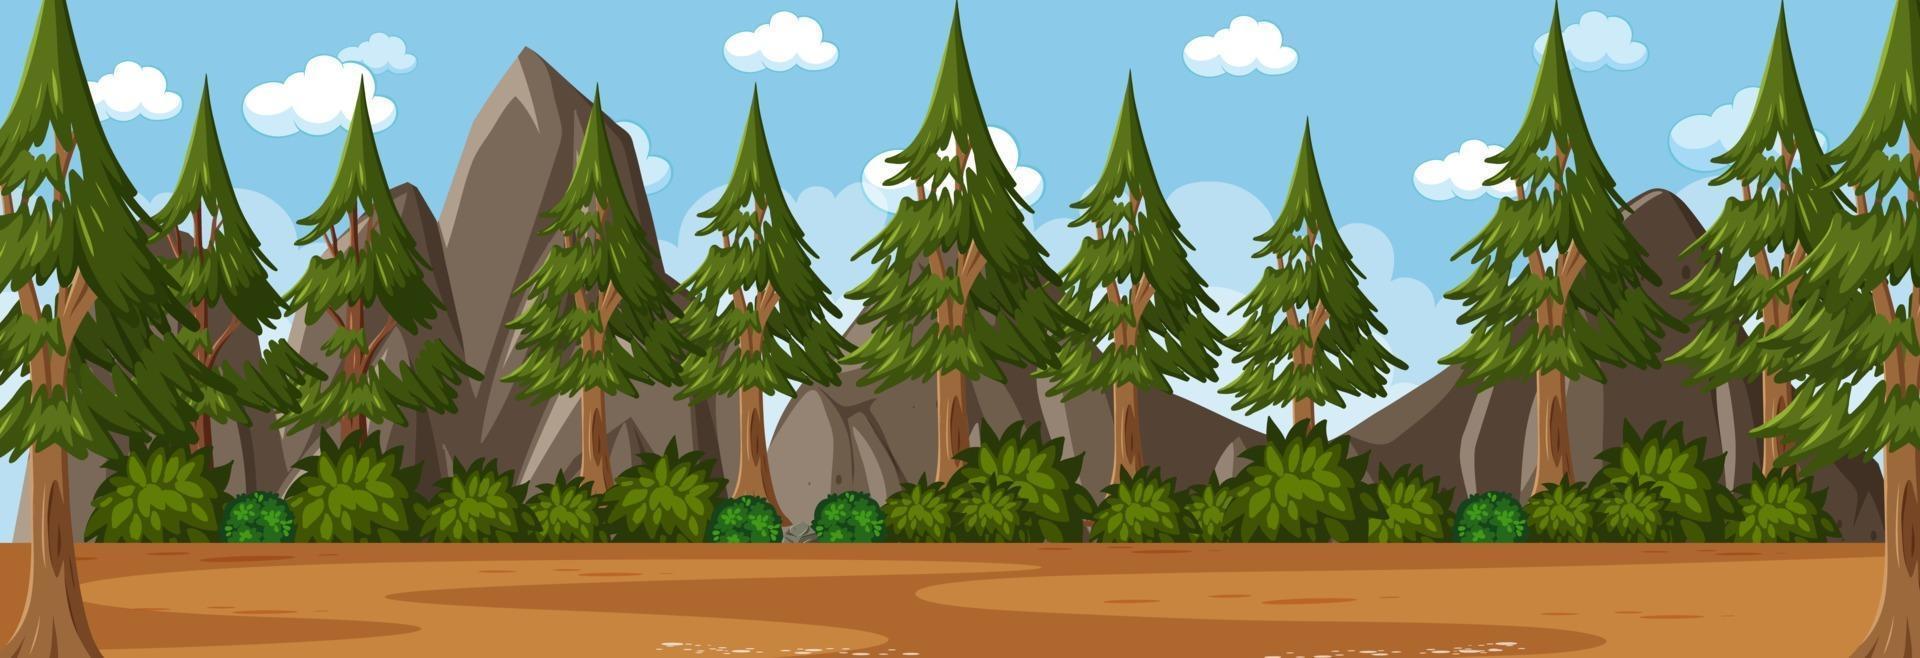 scène horizontale de la forêt au moment de la journée avec de nombreux pins background vecteur